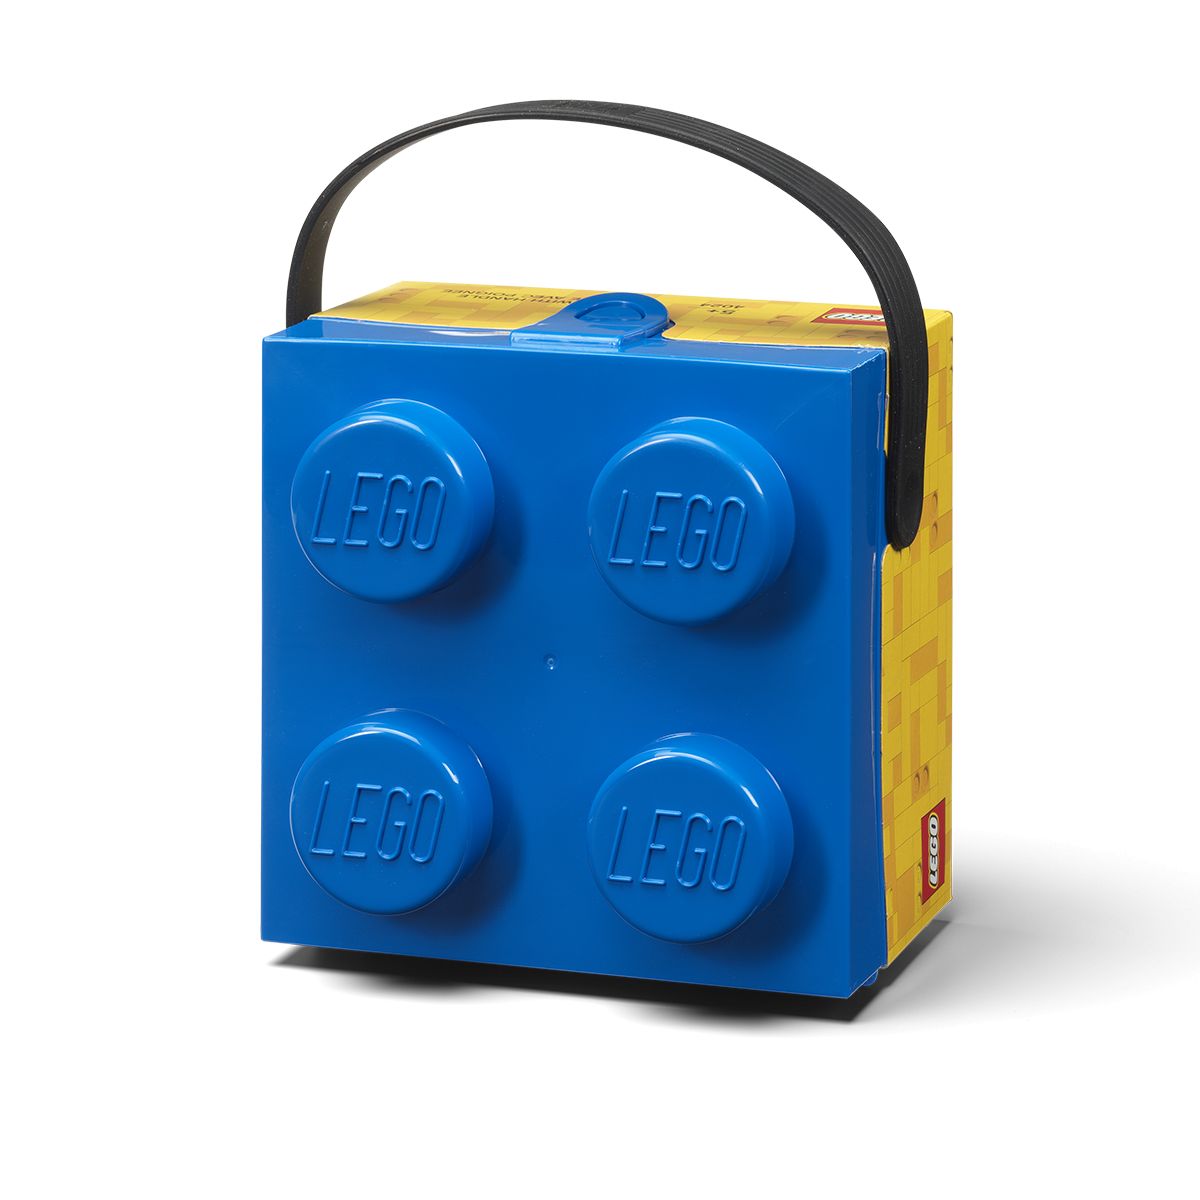 LEGO Gear 5007270 Box mit Tragegriff in Blau LEGO_5007270_alt1.jpg